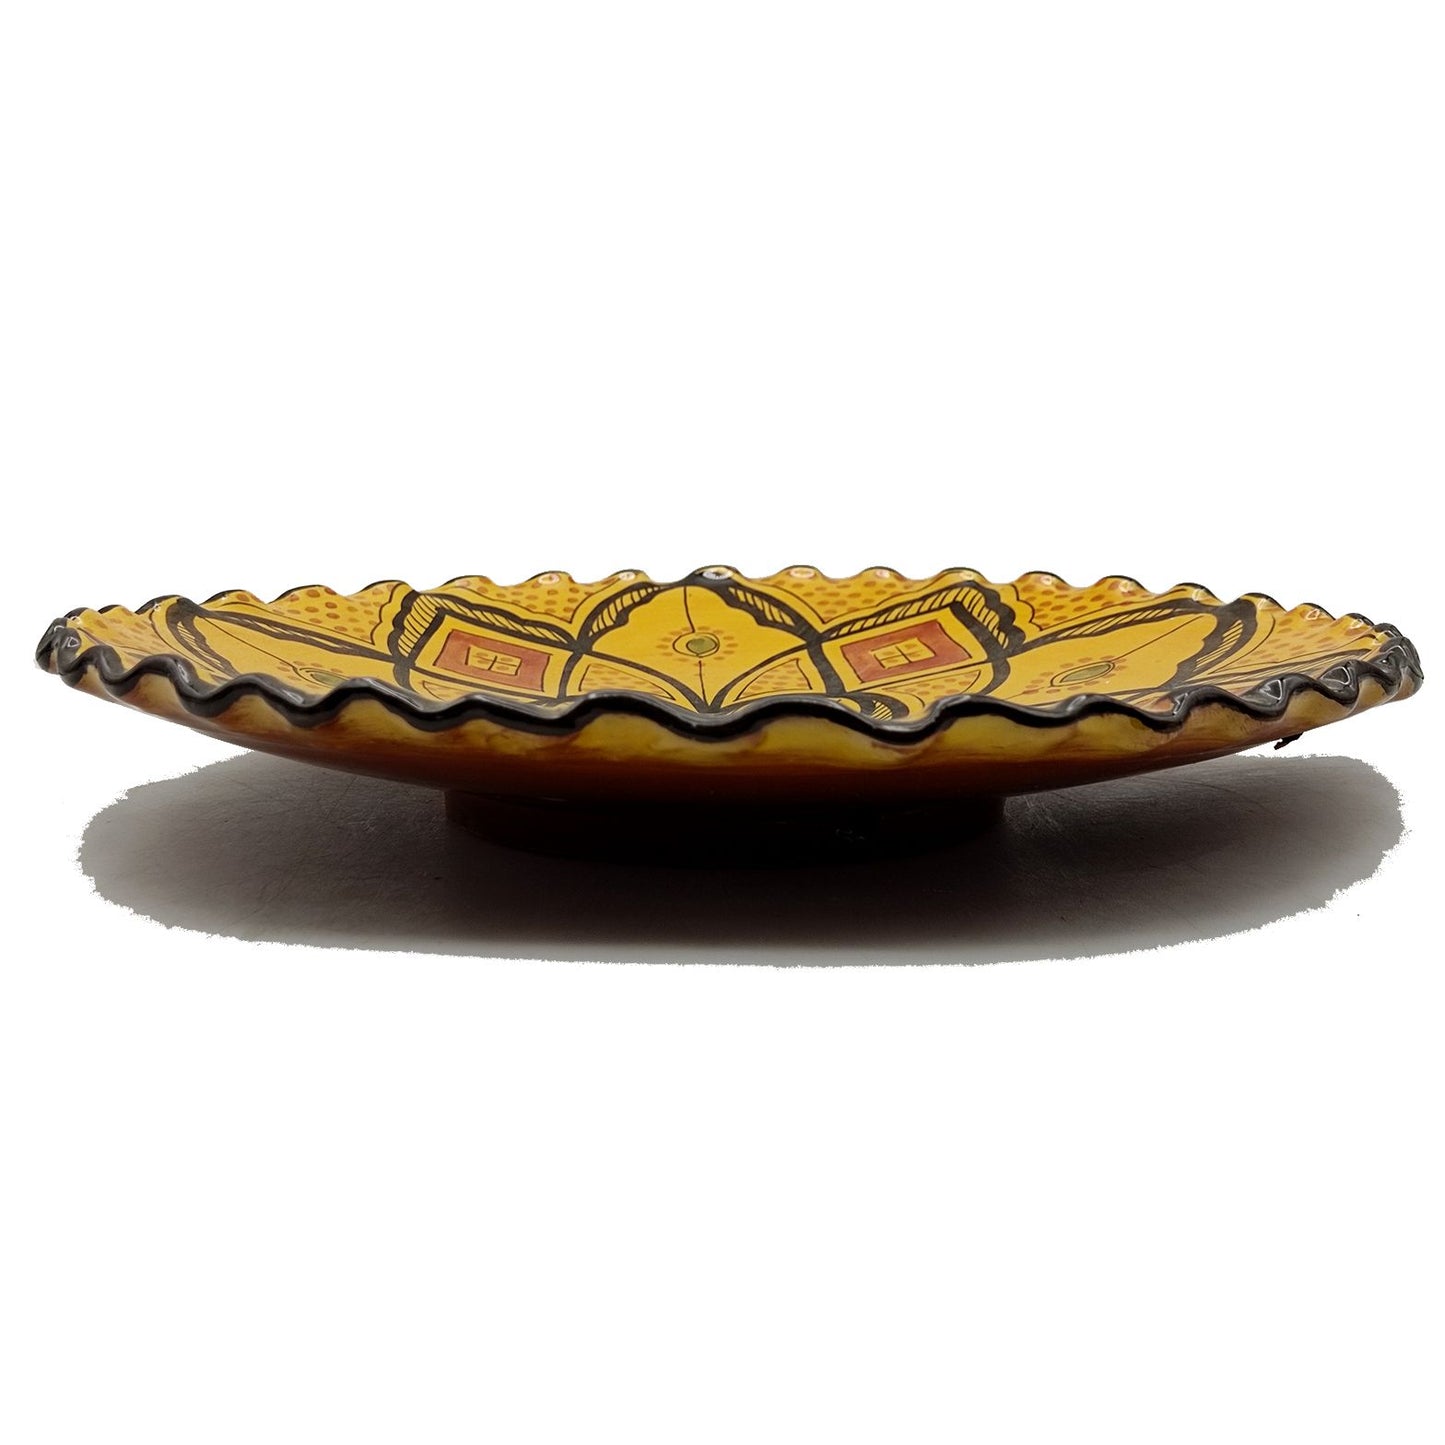 Piatto Ceramica Terracotta Parete Diam.32cm Etnico Marocchino Marocco 2209221002